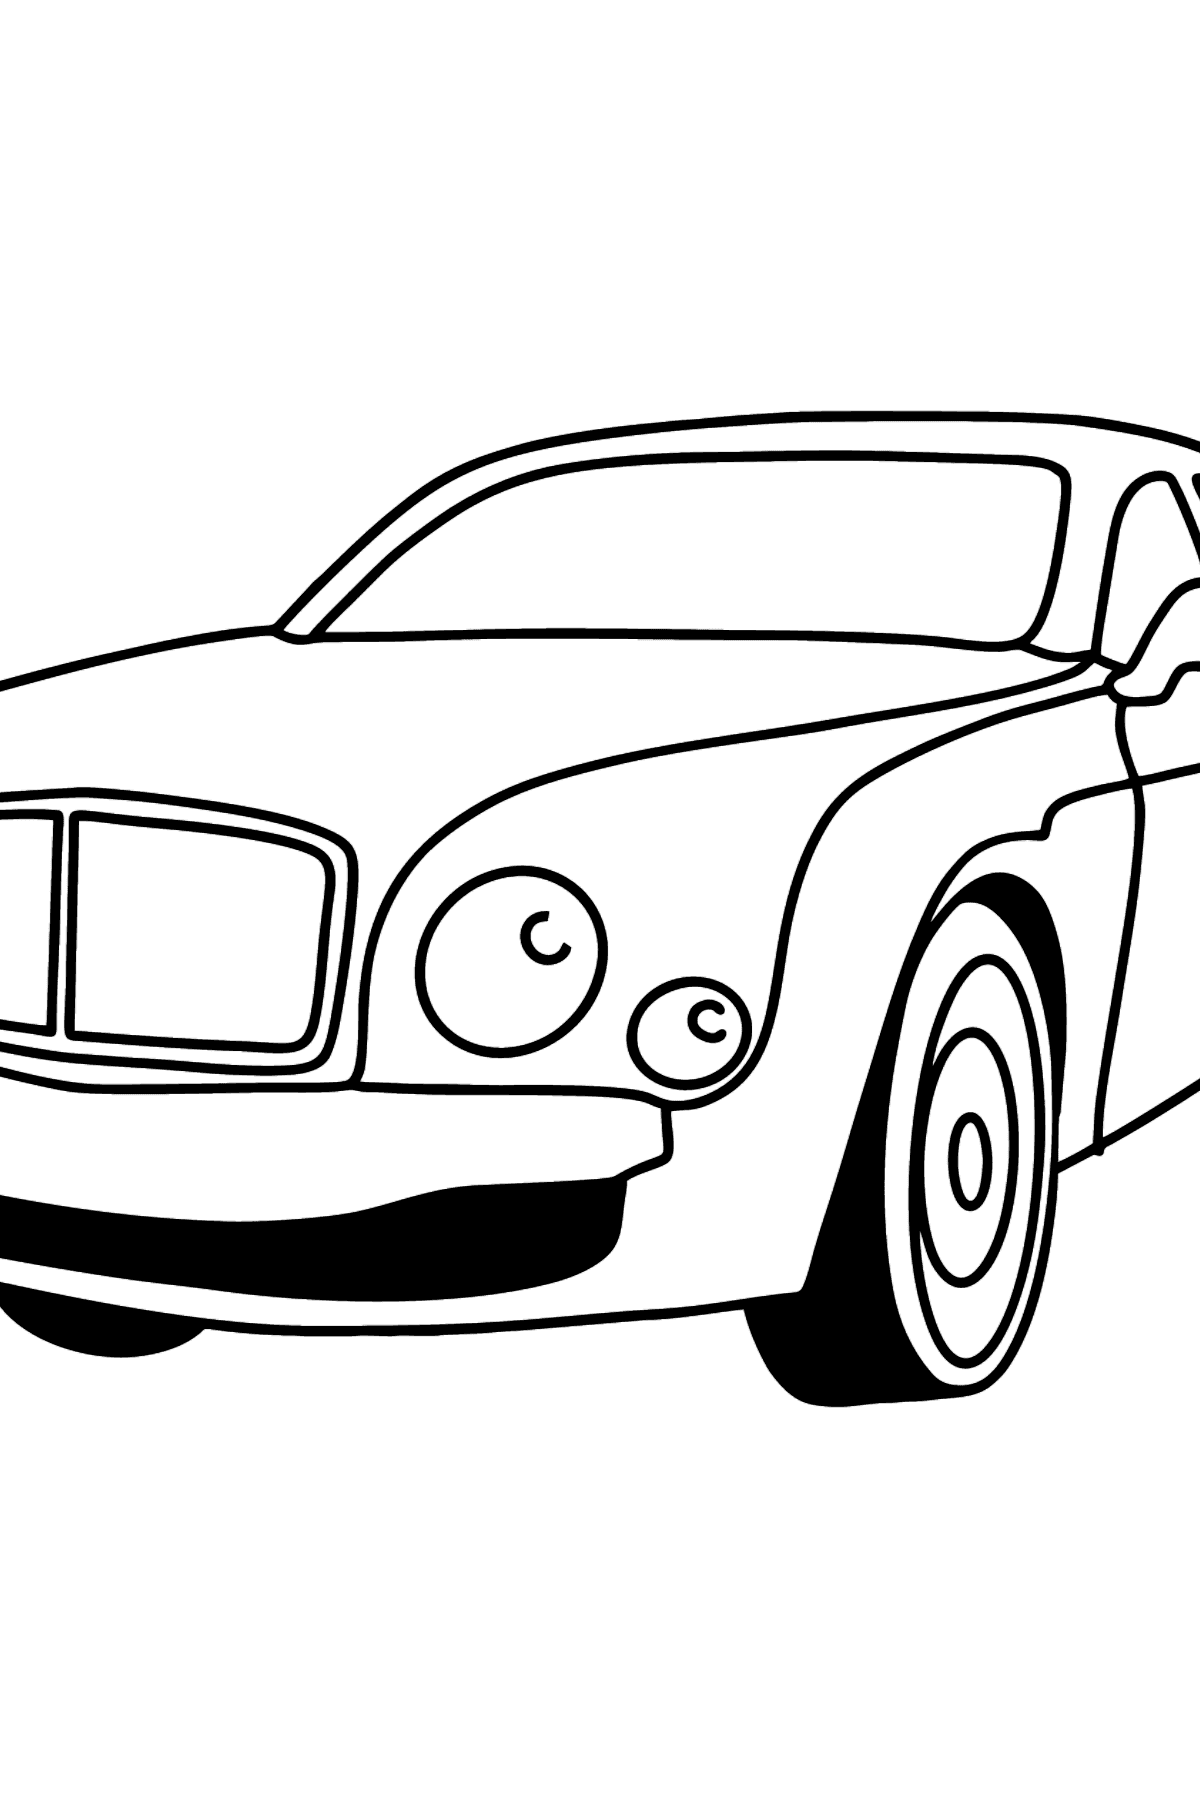 Раскраска Легковой Автомобиль Bentley - Картинки для Детей